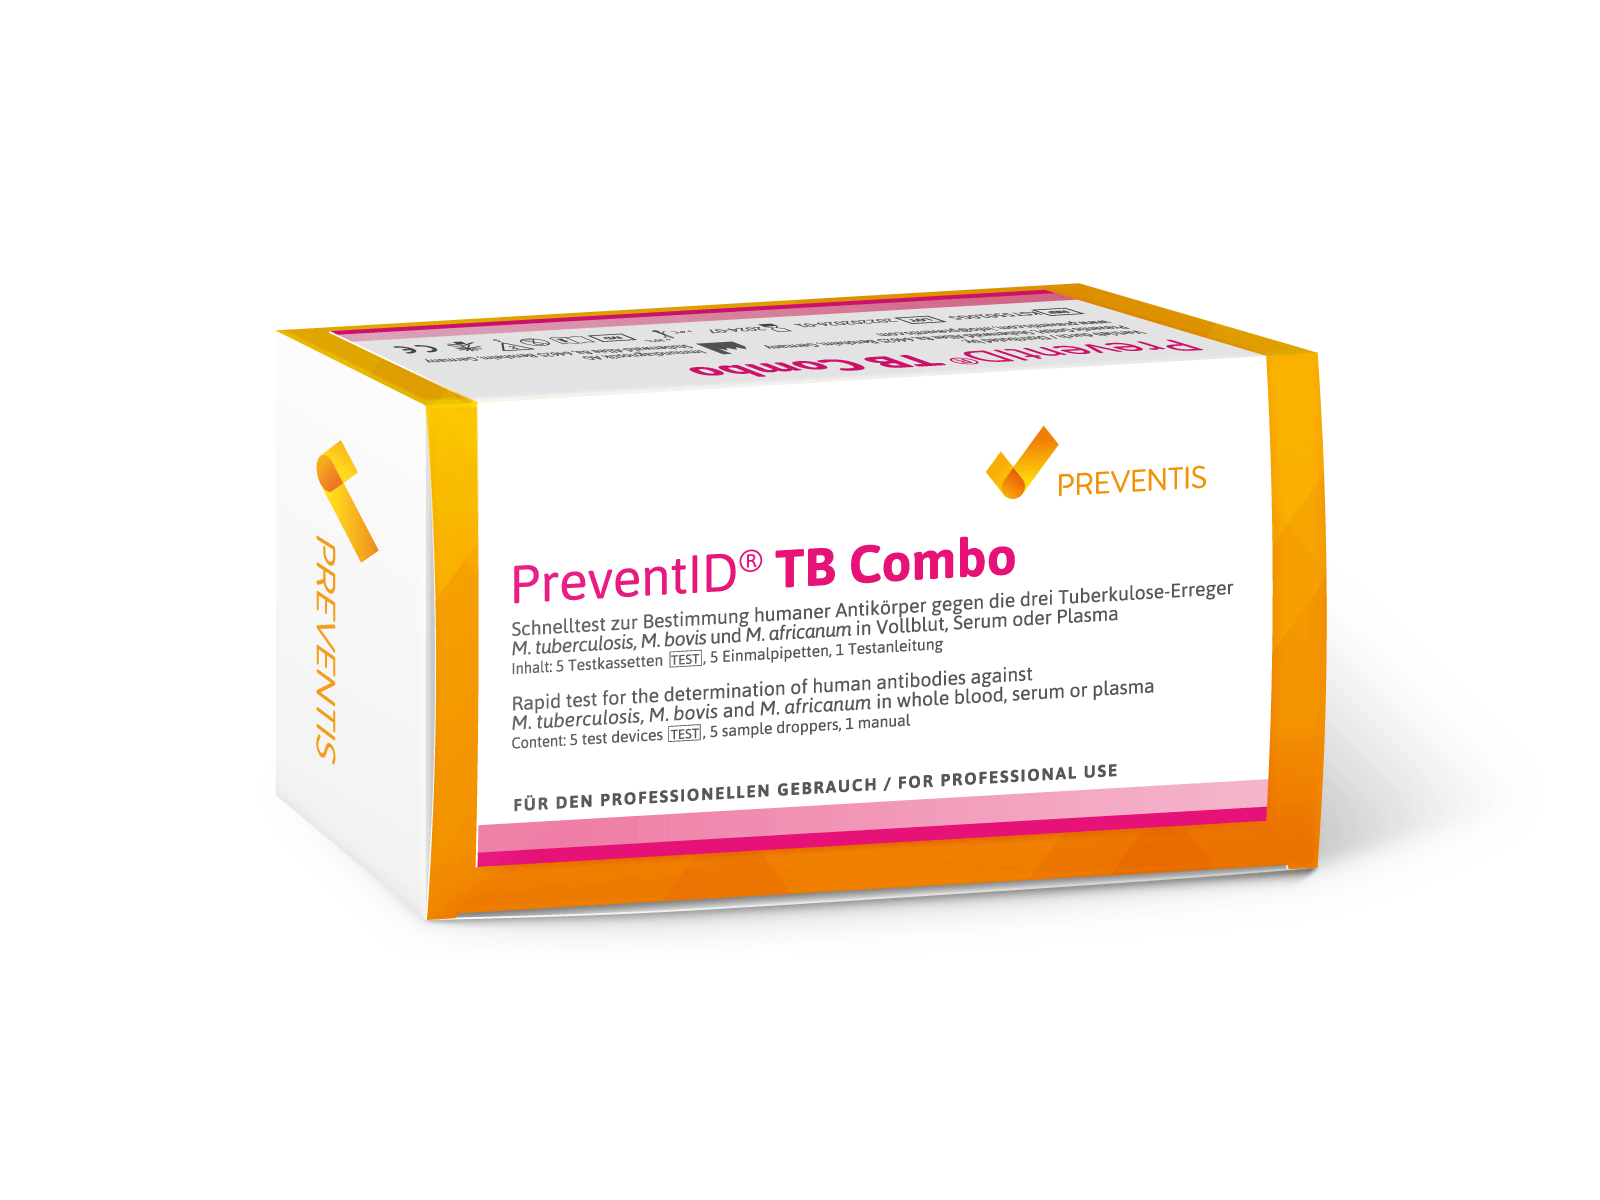 PreventID® TB Combo